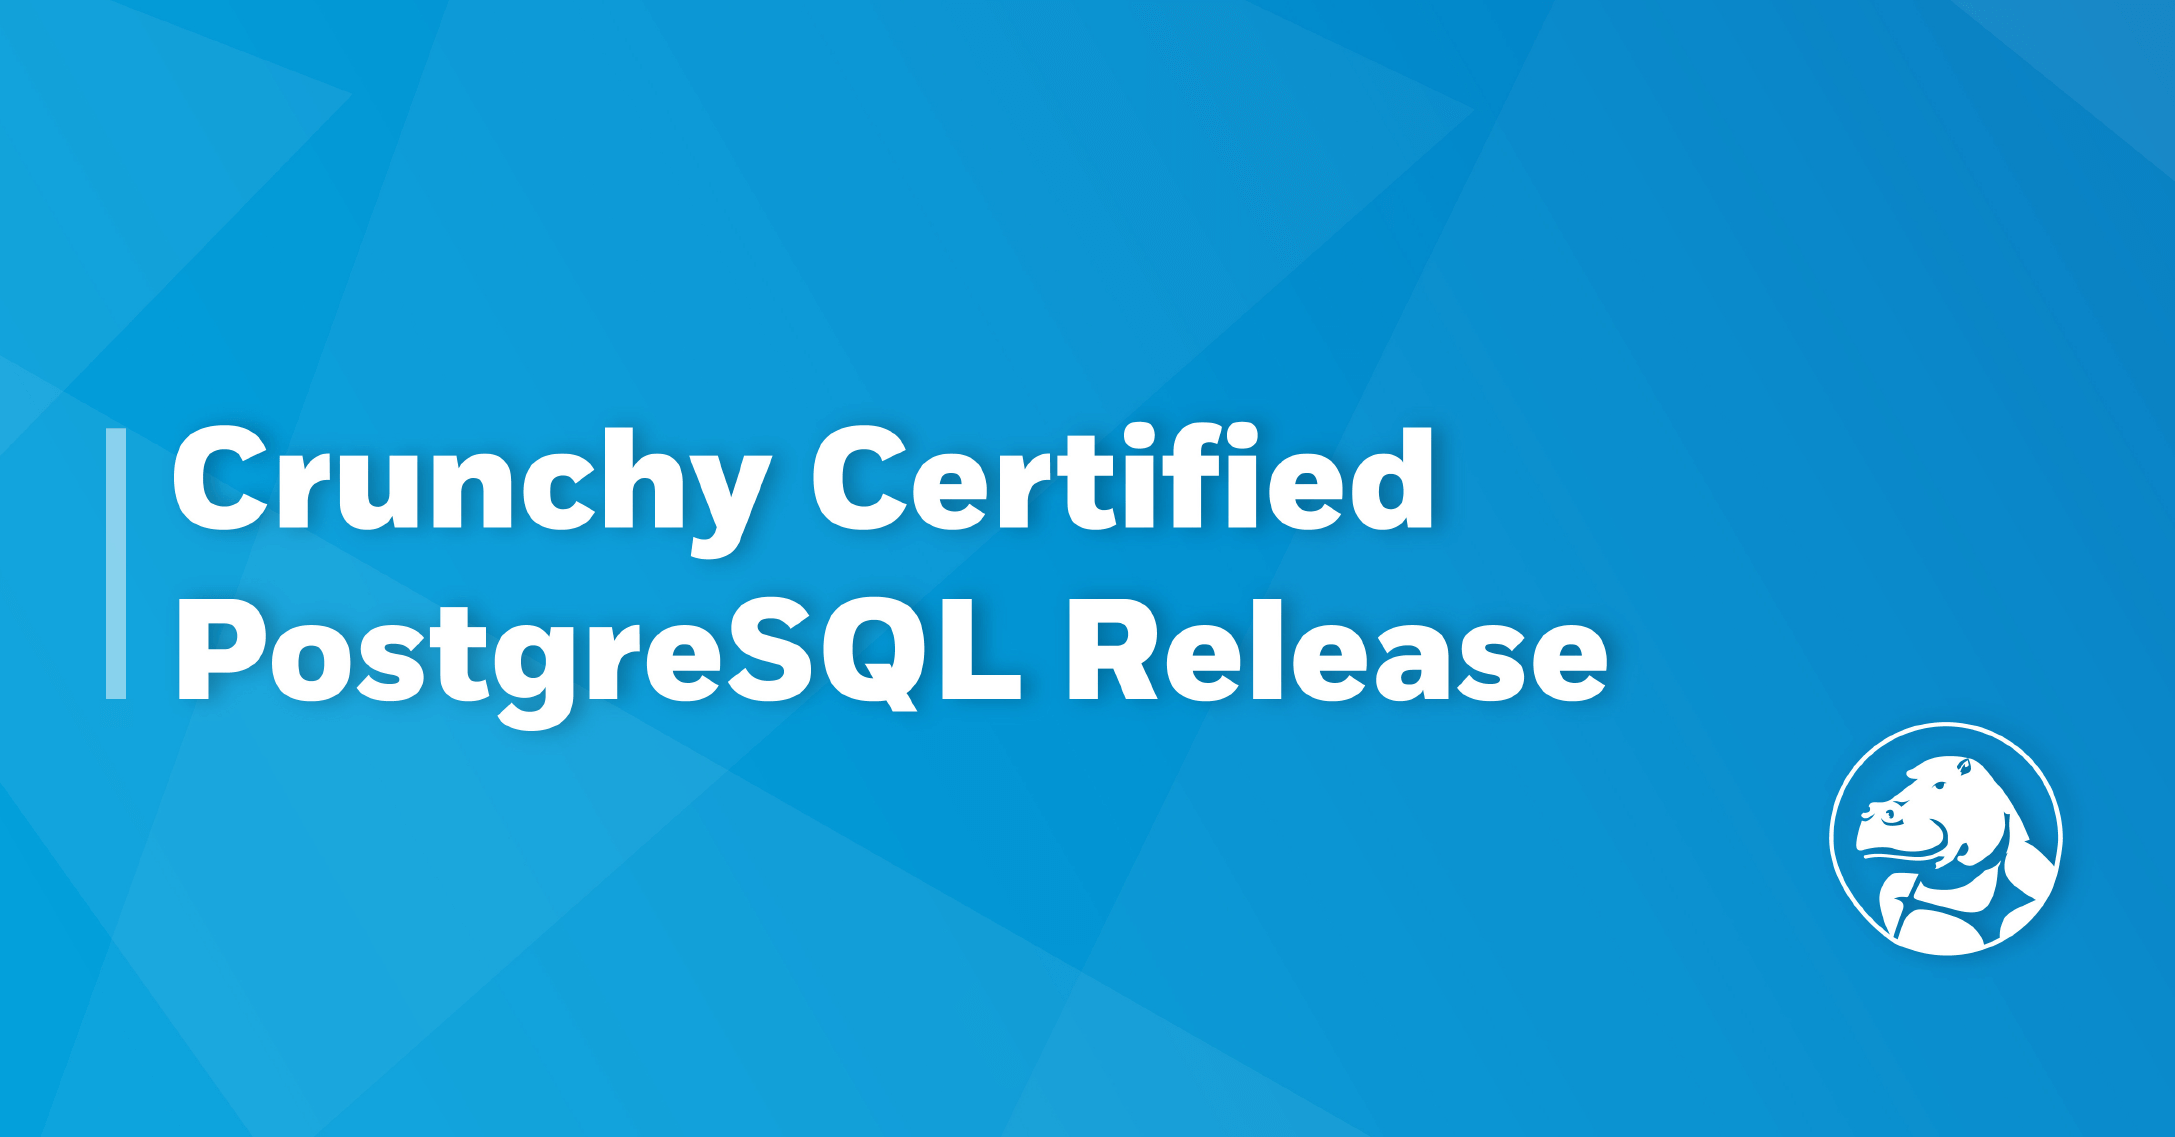 Crunchy Certified PostgreSQL Release Announcement (August 31, 2017)